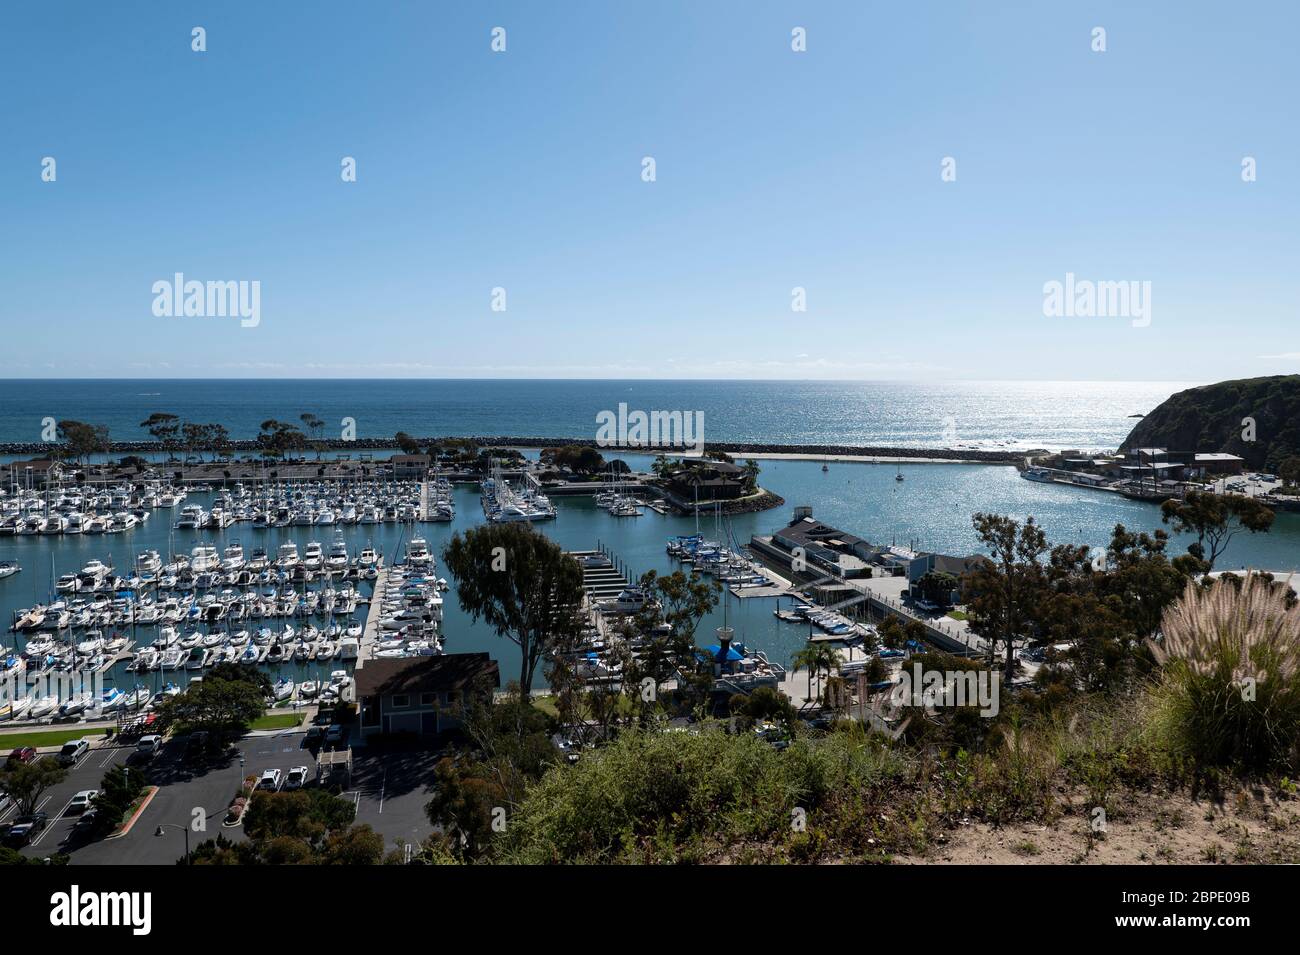 La magnifique marina et le port de Dana point en Californie est une attraction touristique et une destination de vacances populaires Banque D'Images